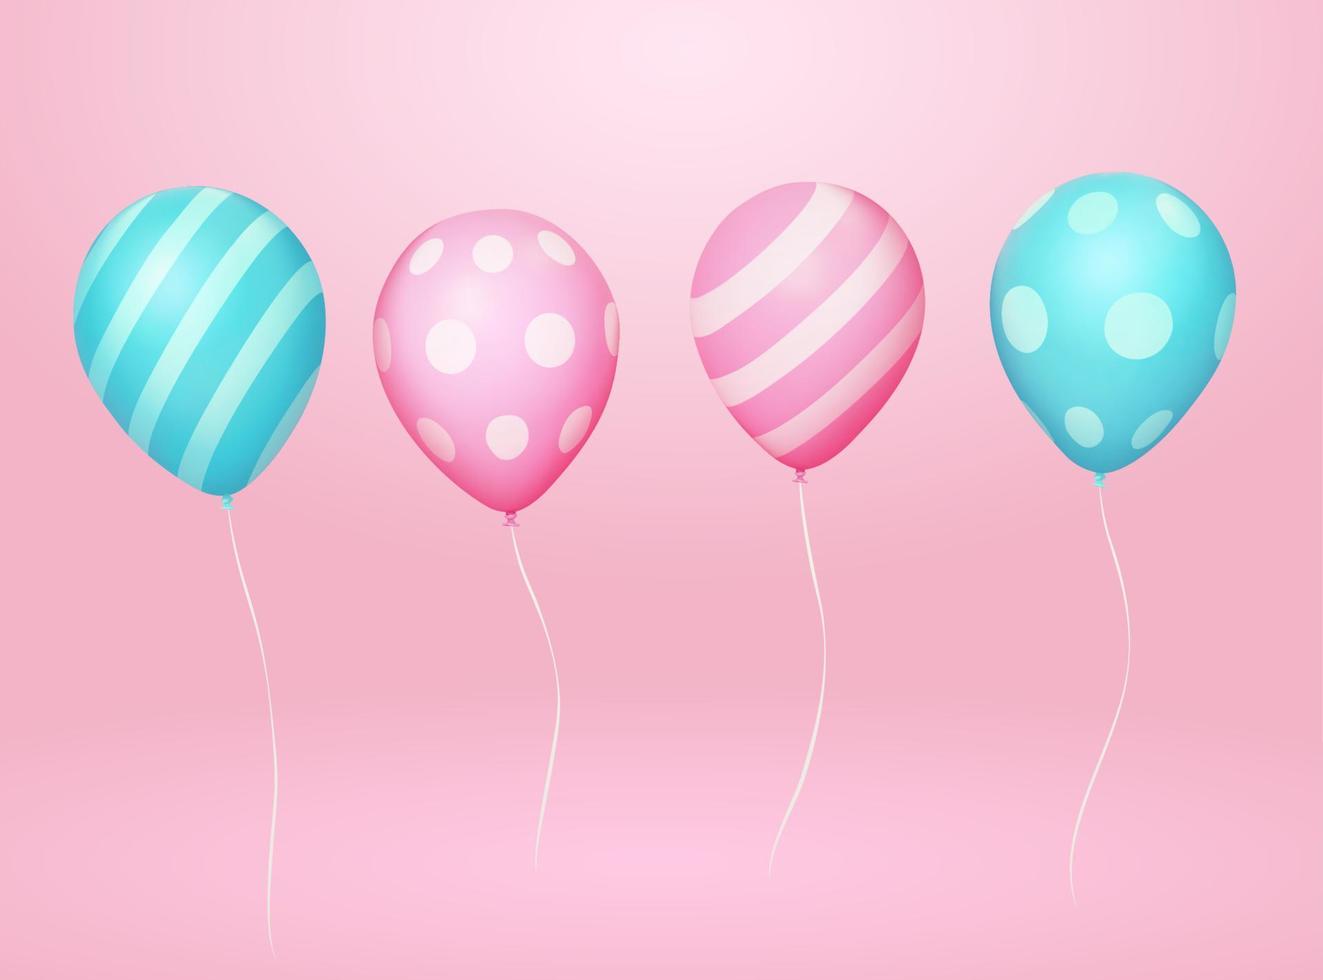 Ballons à motifs 3d avec des cordes. illustration de deux paires de ballons de couleur rose et bleue. chaque groupe a des surfaces rayées et pointillées attachées avec des cordes blanches sur fond rose vecteur